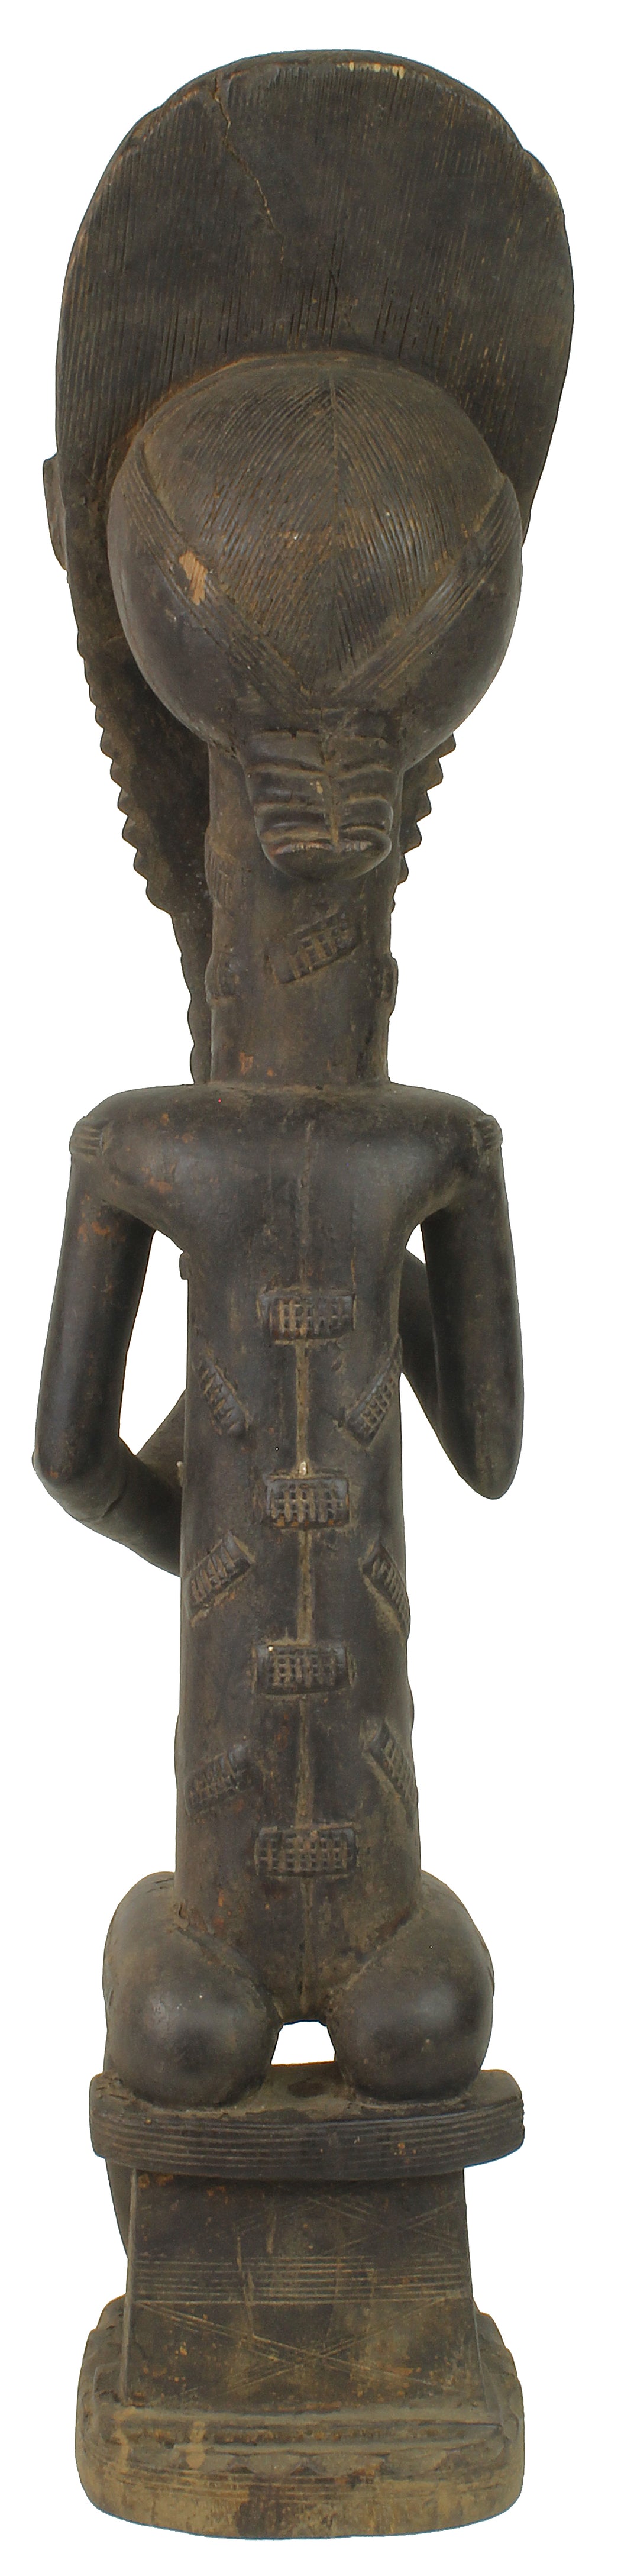 Large Baule Male Ancestor Spirit Statue | 20.5" - Niger Bend